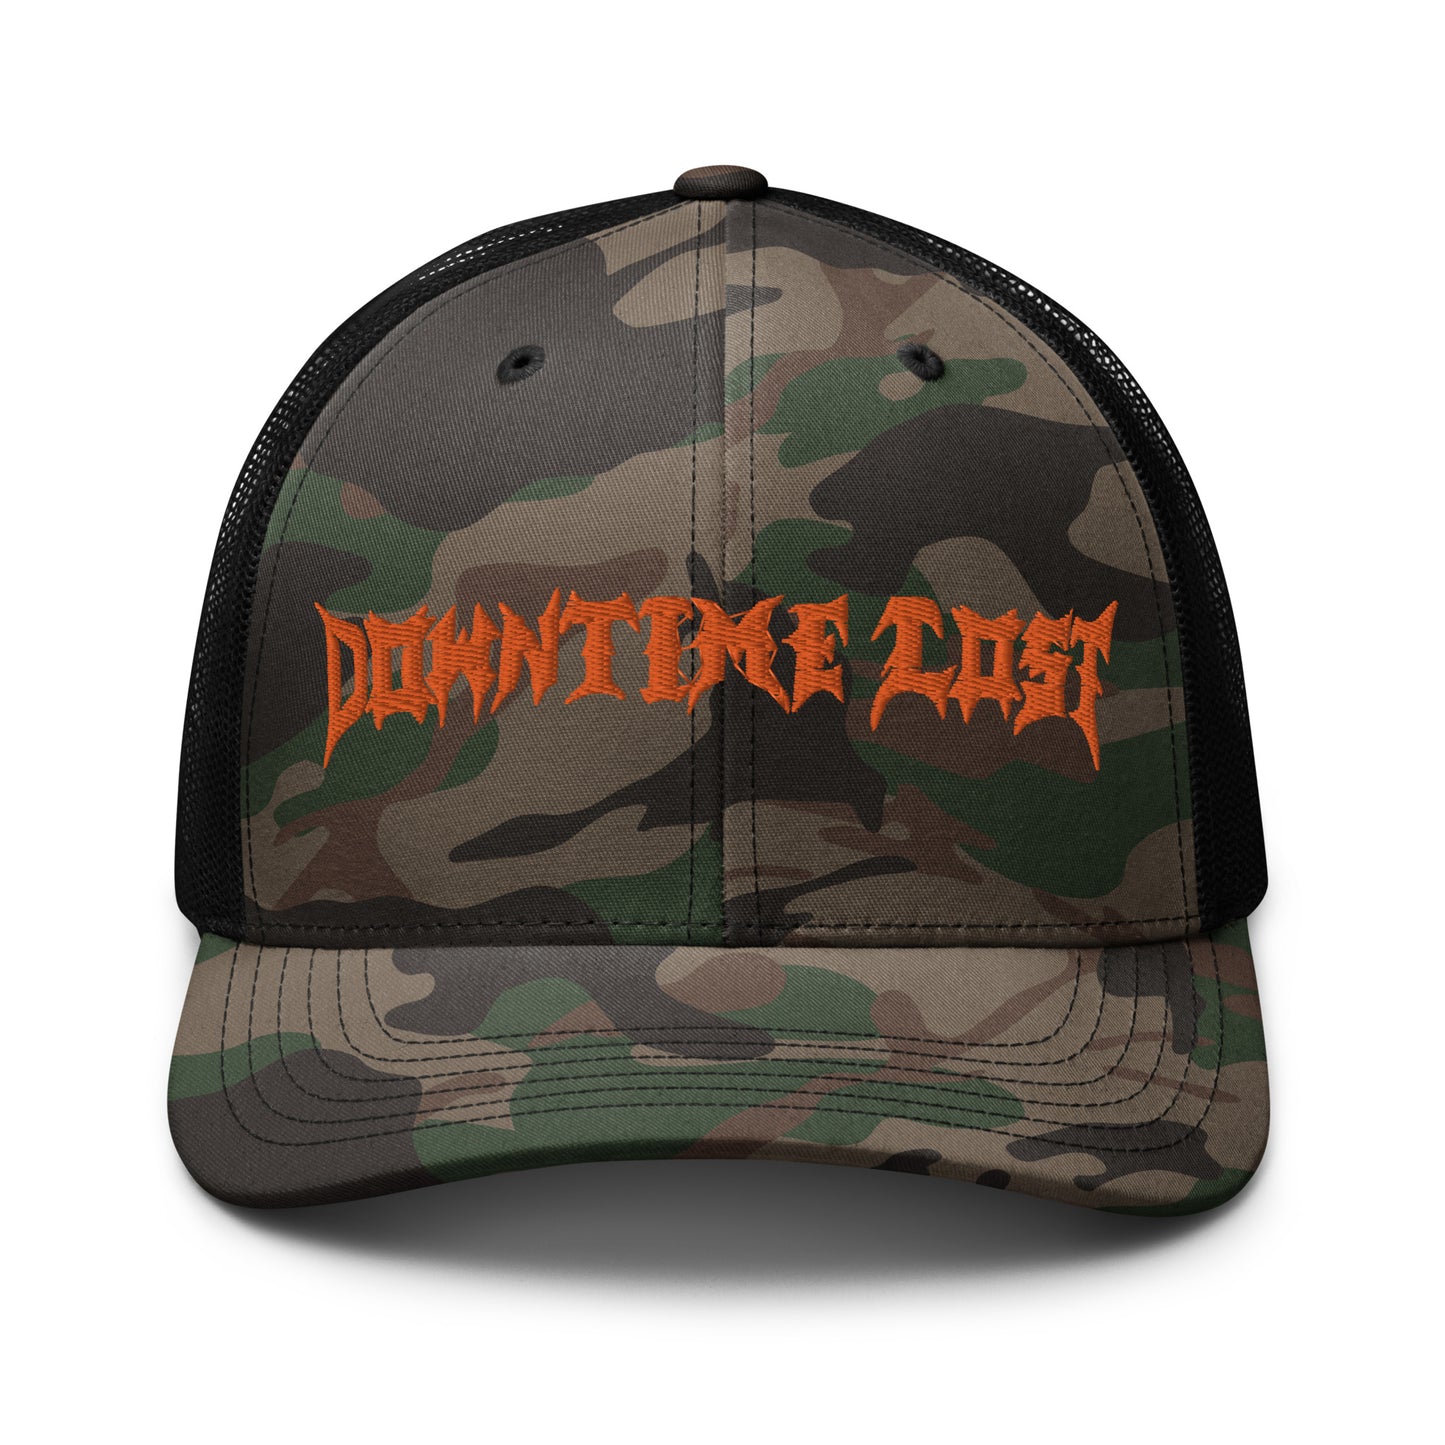 Screamo DTL - Camouflage trucker hat